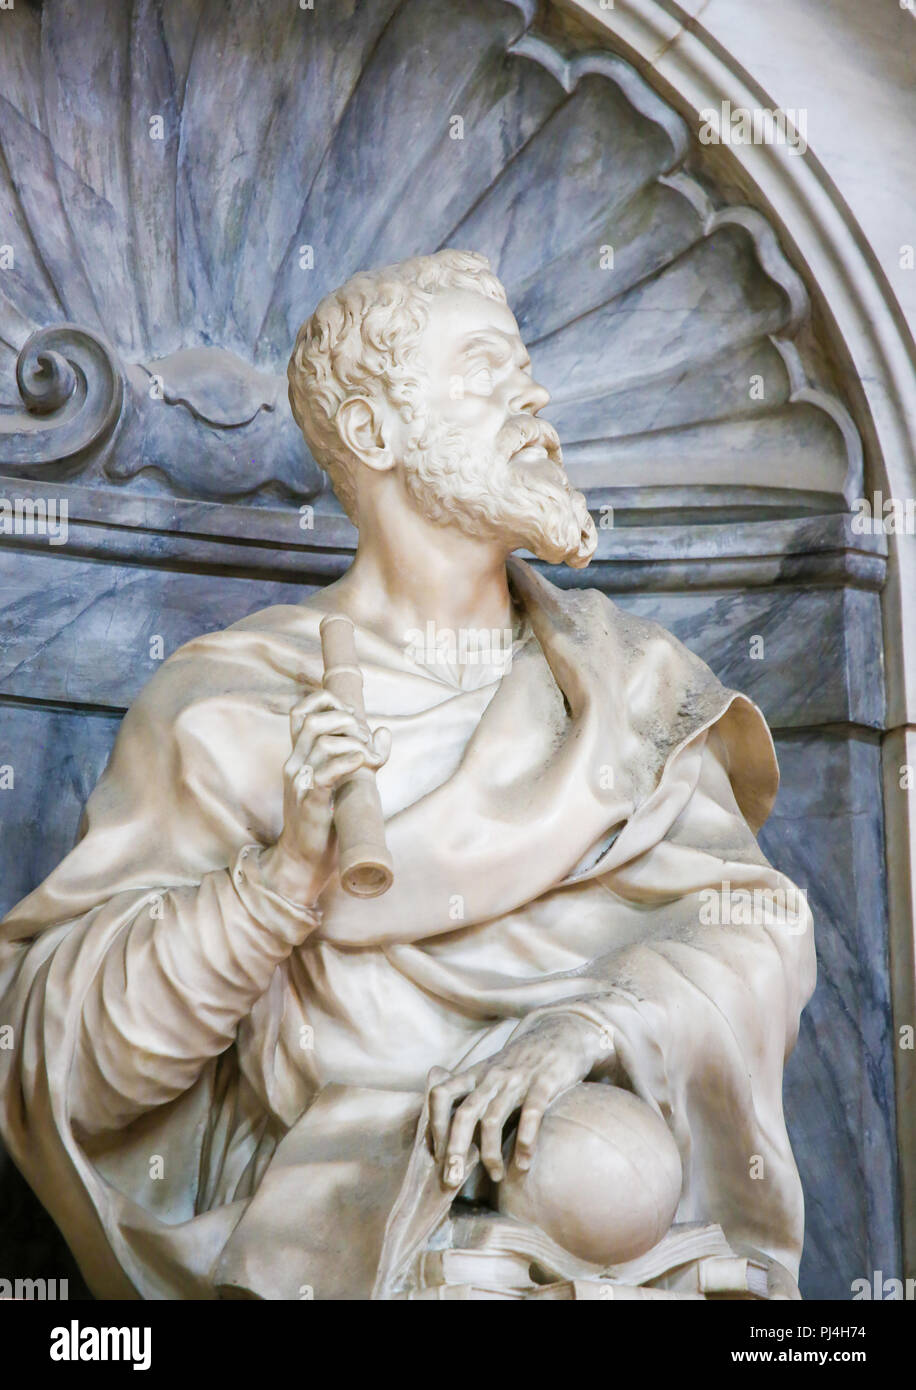 Statua di Galileo Galilei presso la sua tomba nella Basilica di Santa Croce, Firenze, Italia. Foto Stock